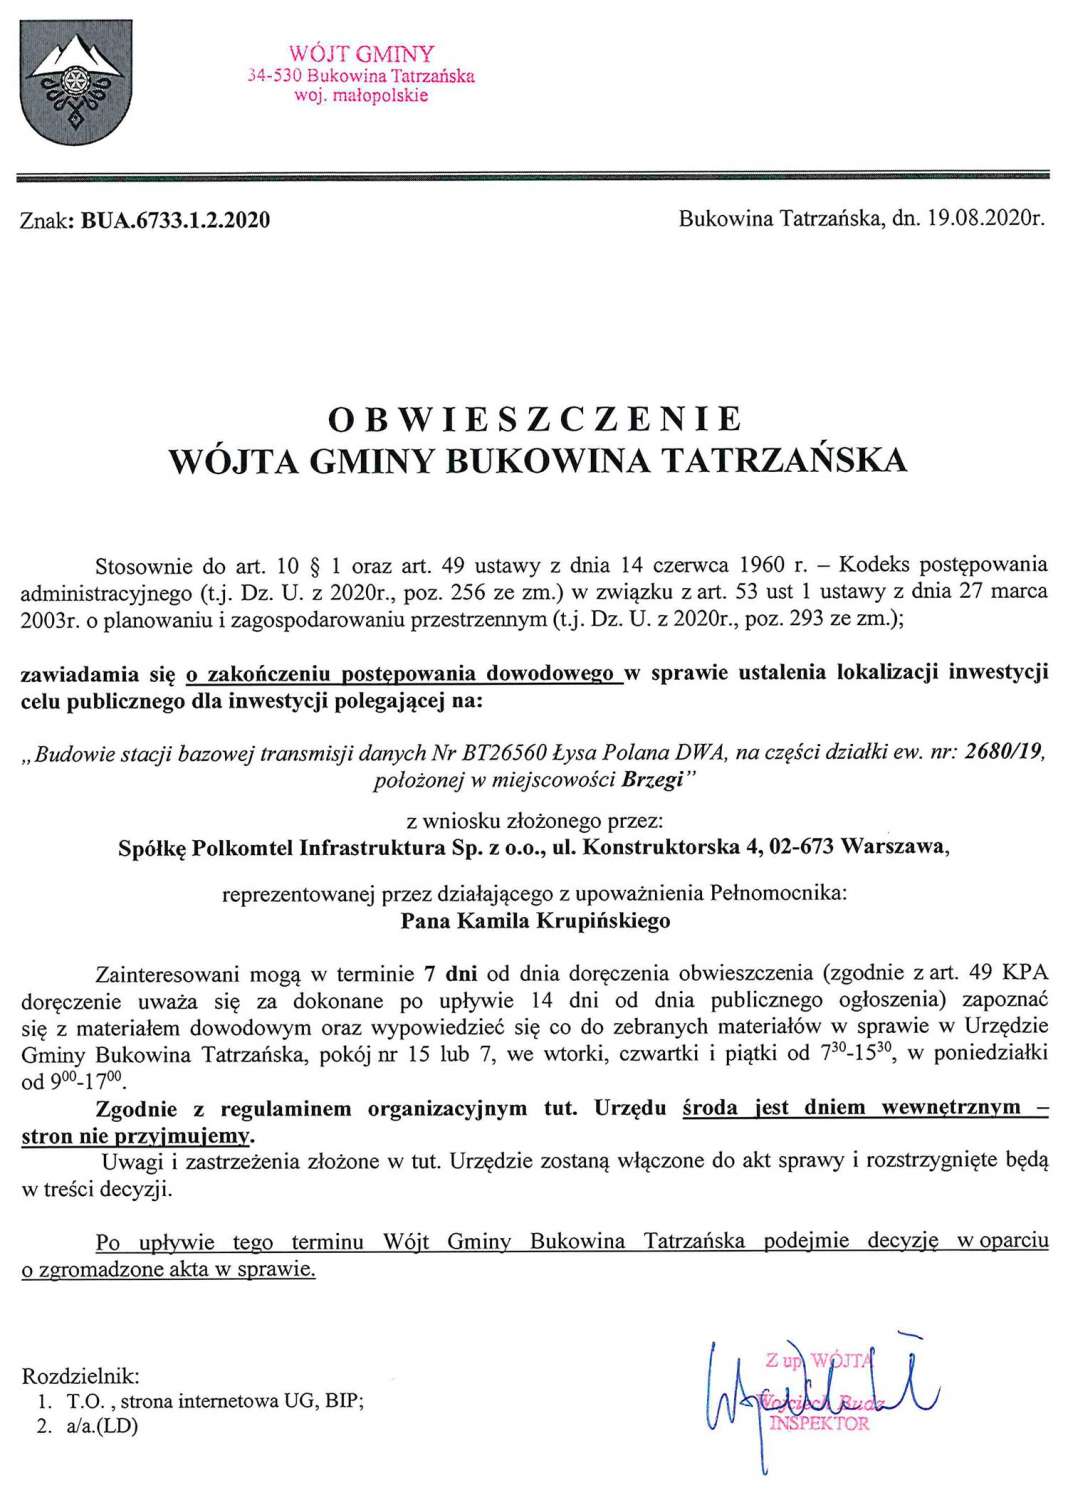 Obwieszczenie Wójta Gminy Bukowina Tatrzańska BUA 6733.1.2.2020